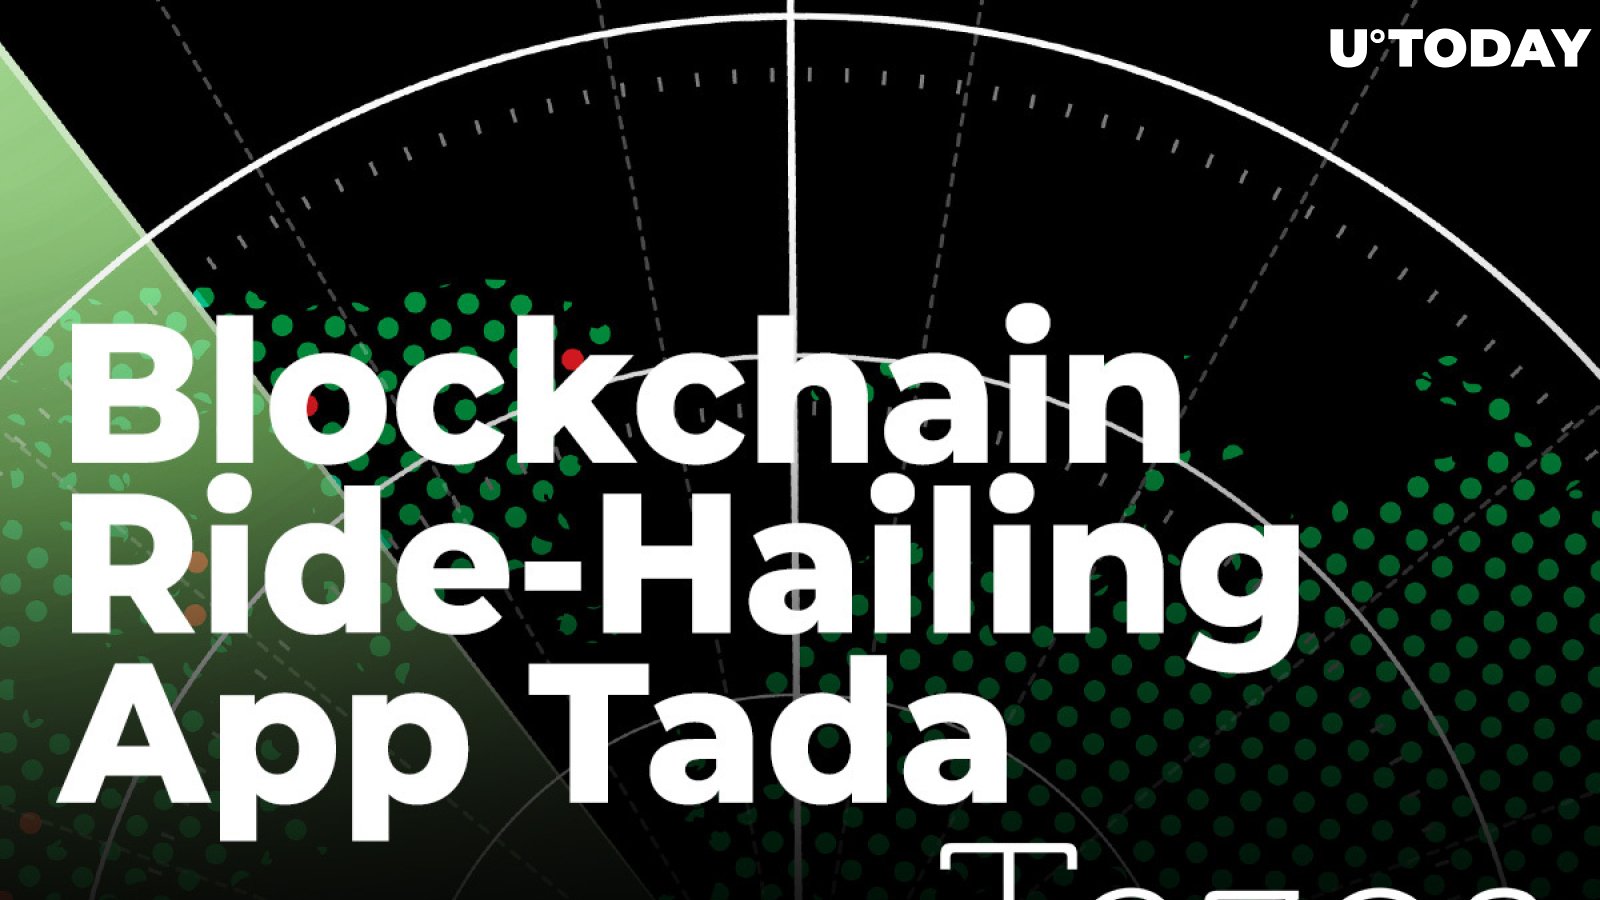 Blockchain Ride-Hailing App Tada Moves to Greener Tezos Technology